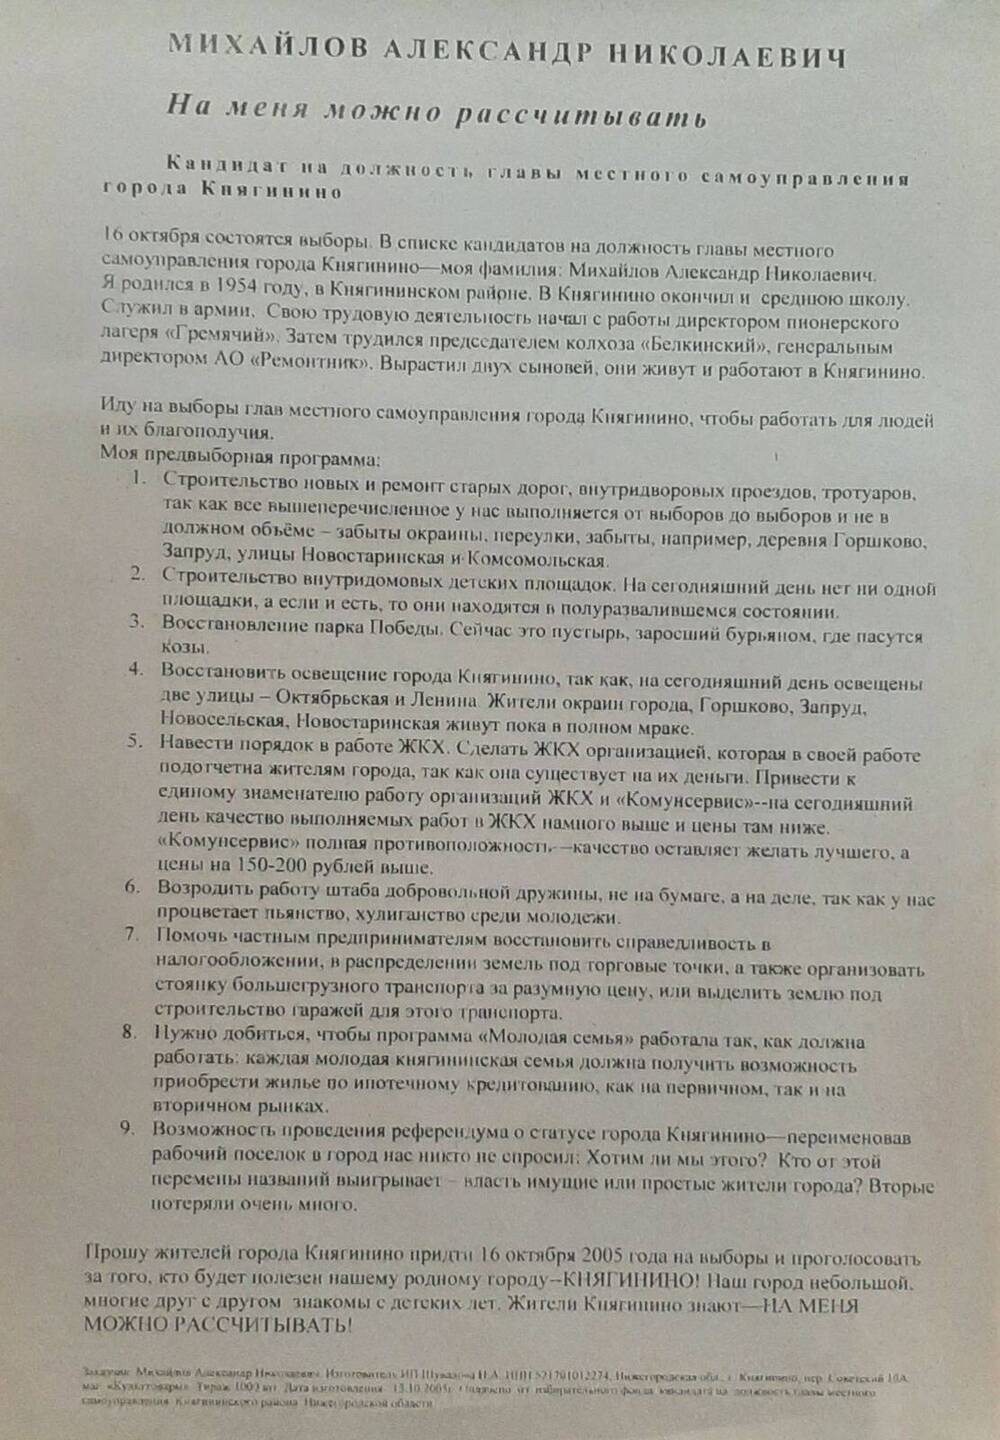 Листовка в поддержку михайлова А.Н. на должность главы городского самоуправления на выборах 10.10.2005 года